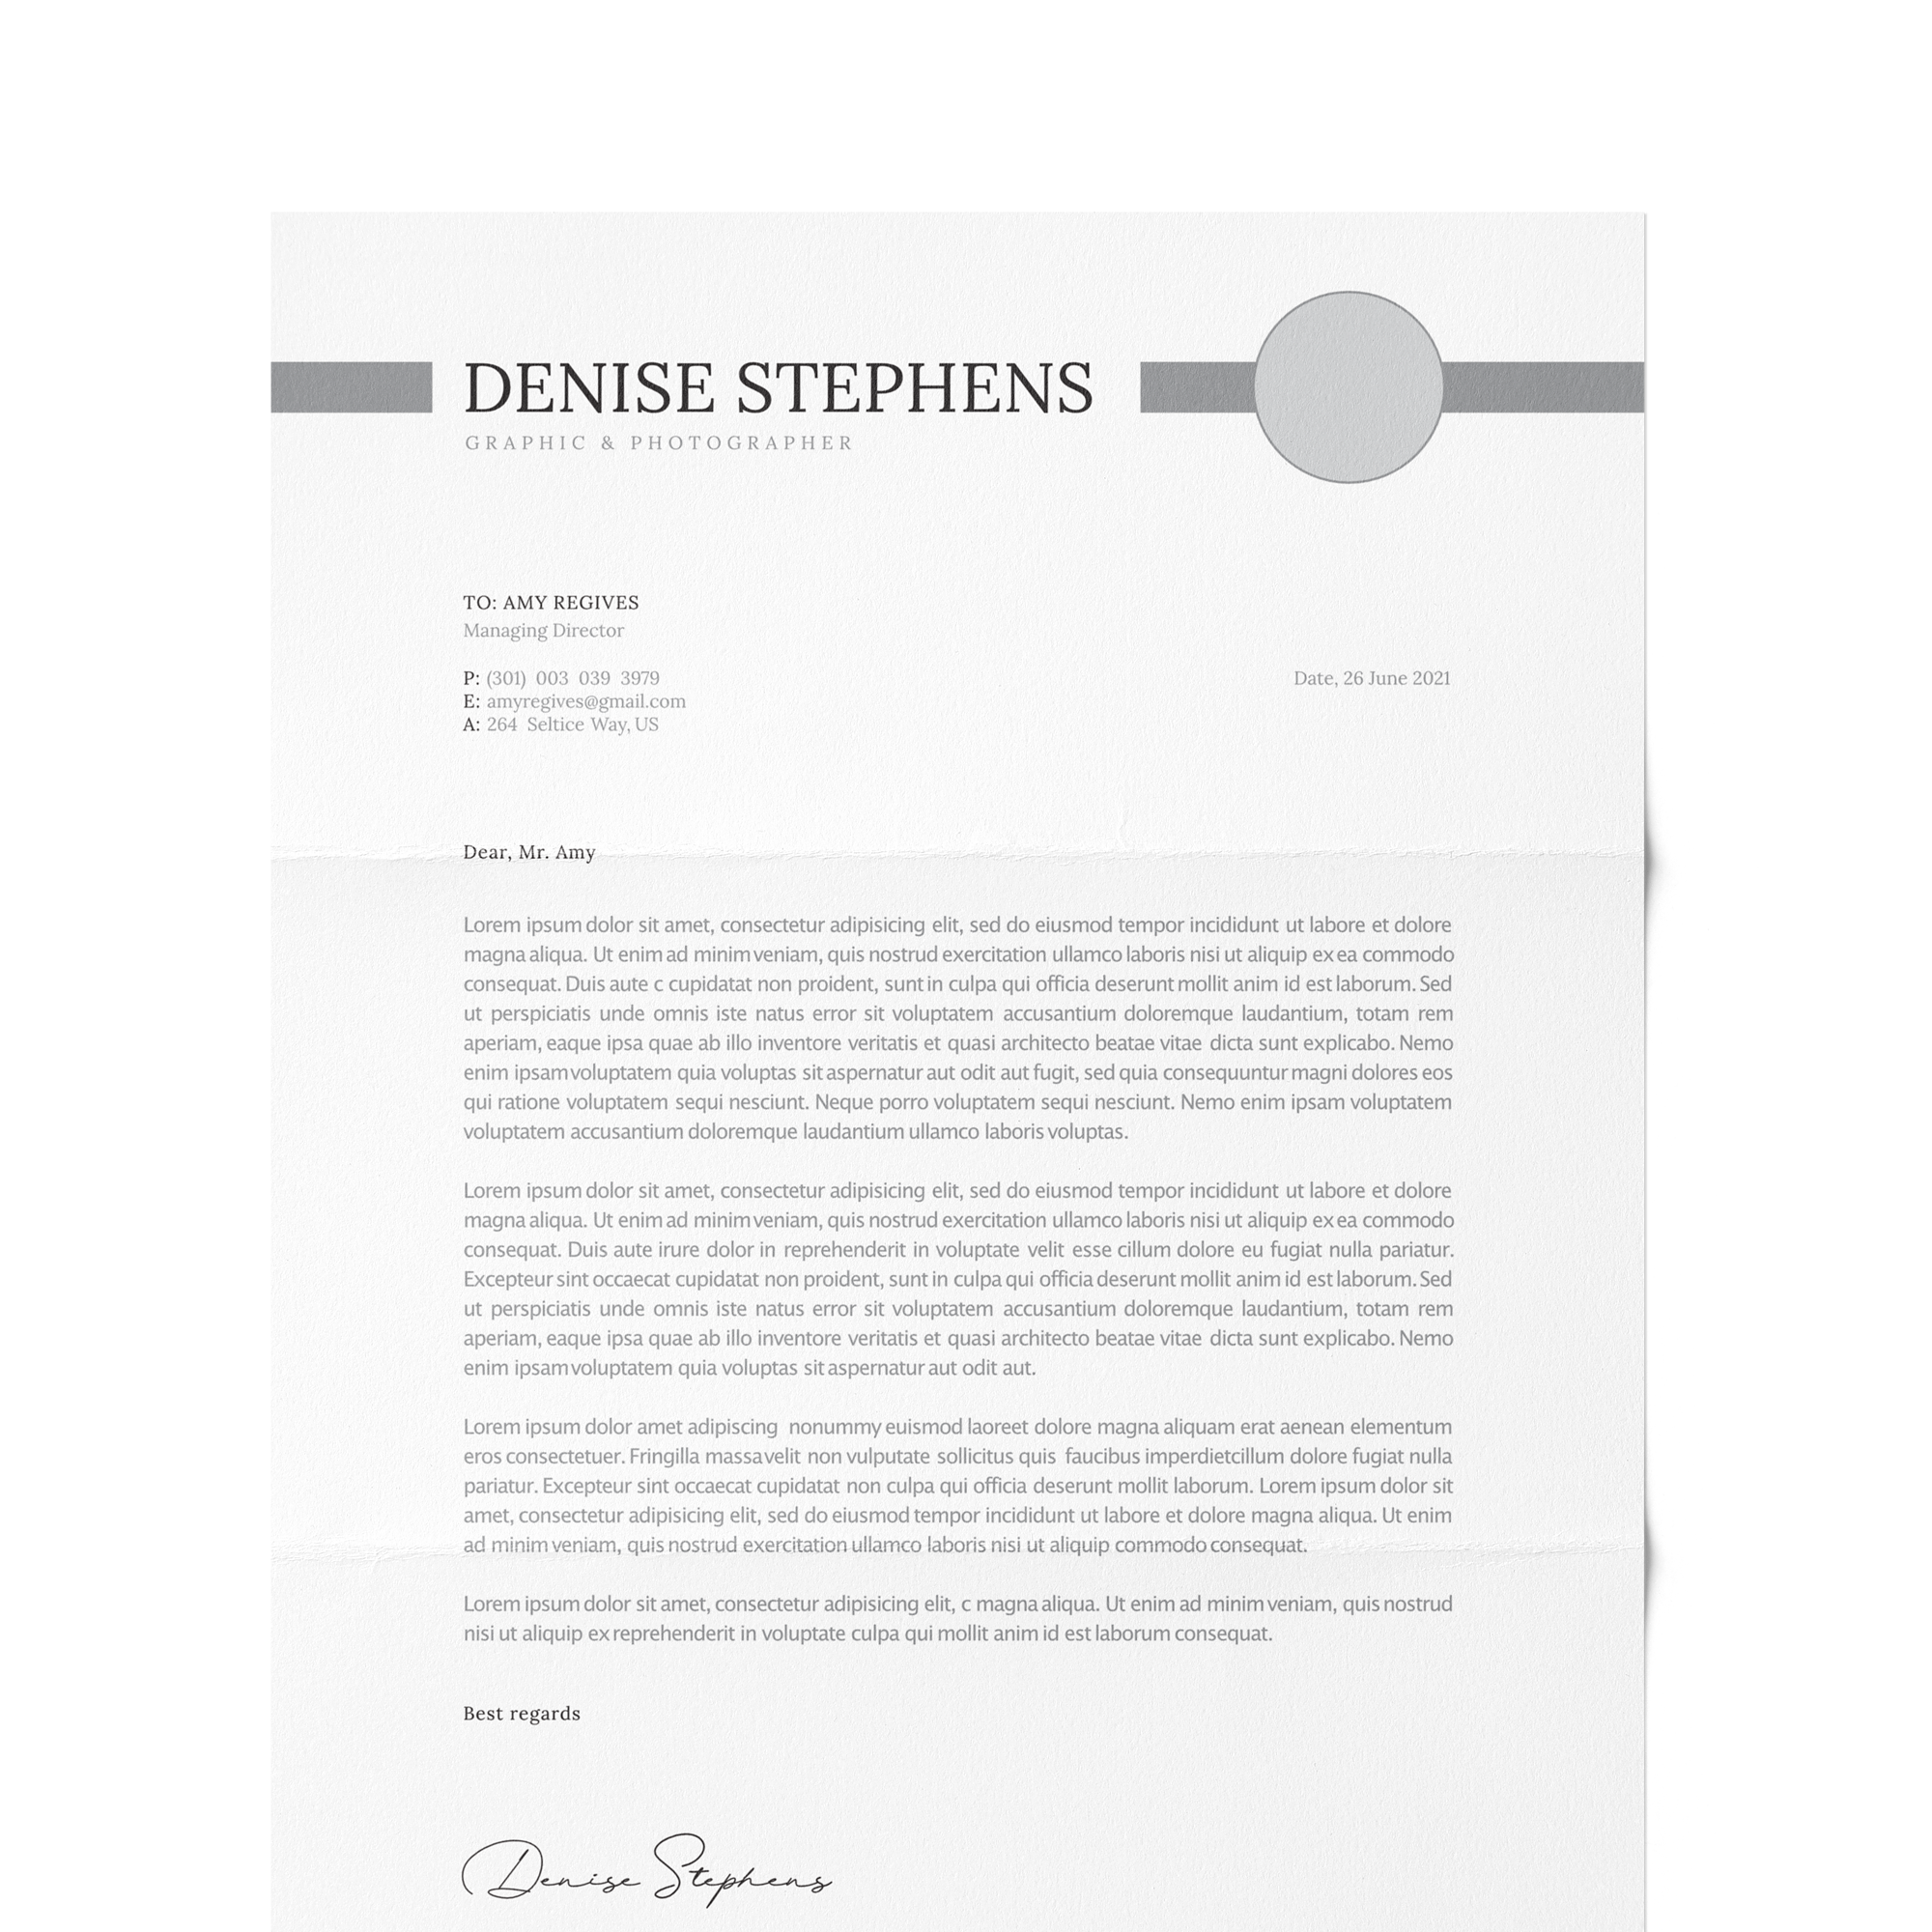 CV #64 Denise Stephens